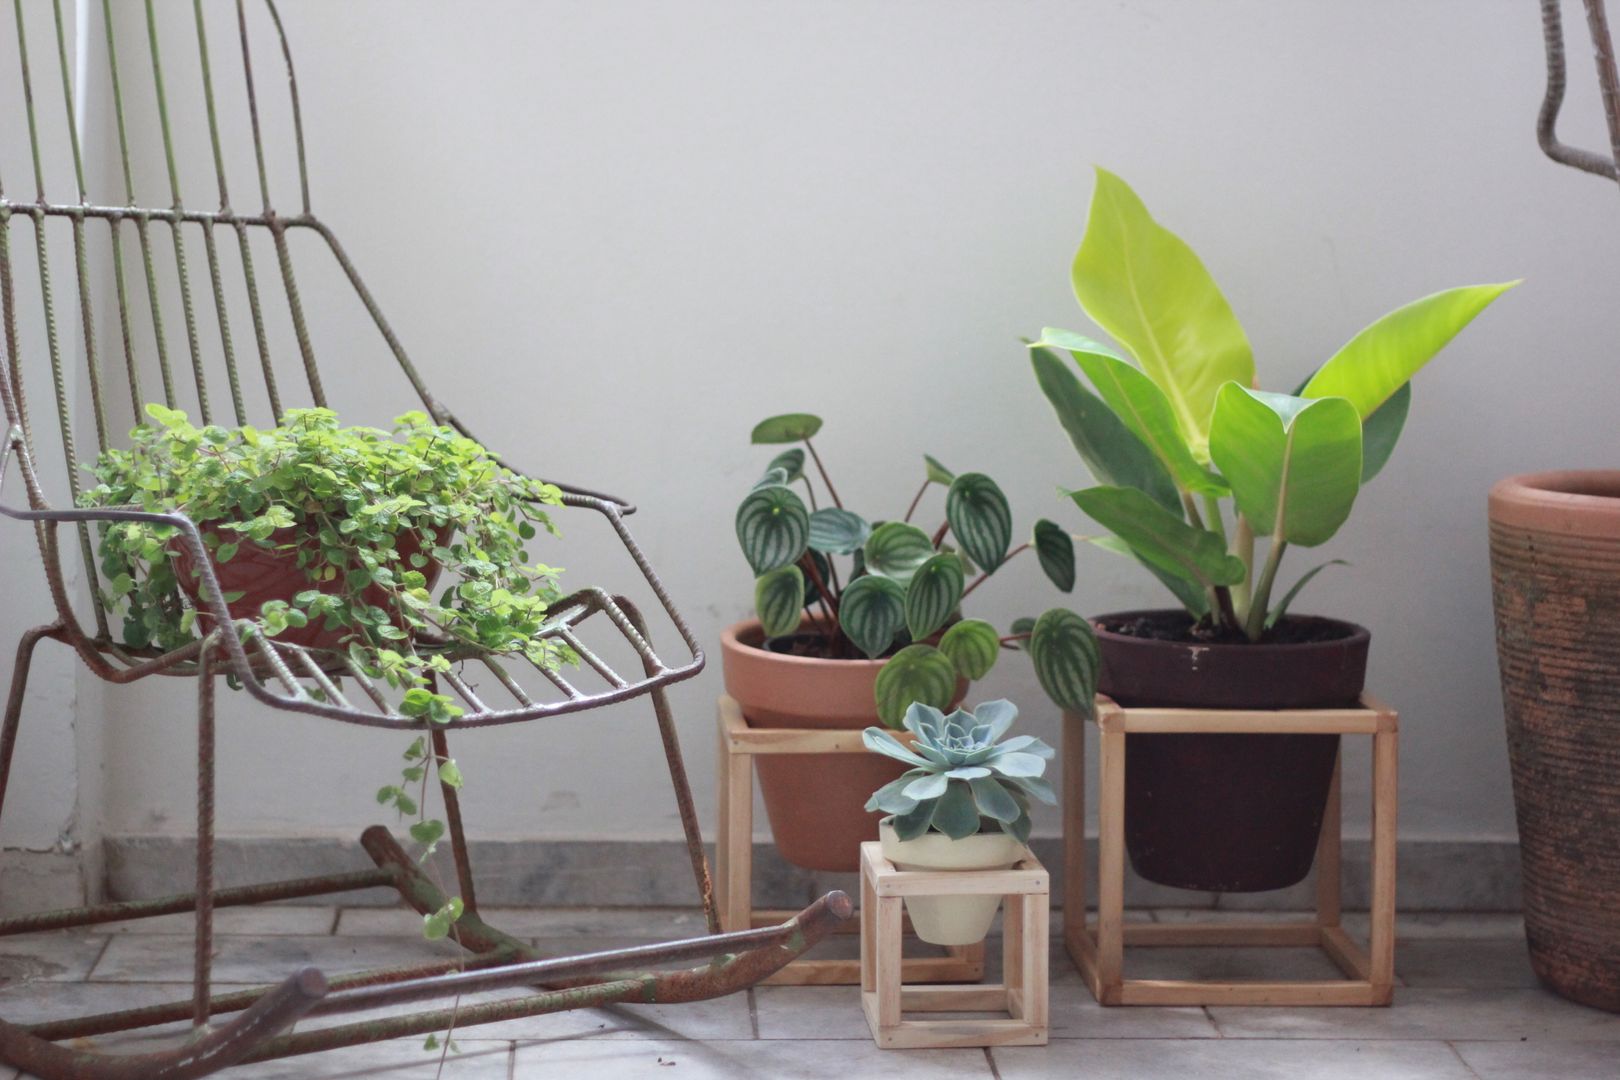 SUPORTE DE MADEIRA + Vaso de cerâmica, Pomelo Pomelo Jardines de estilo minimalista Plantas y flores